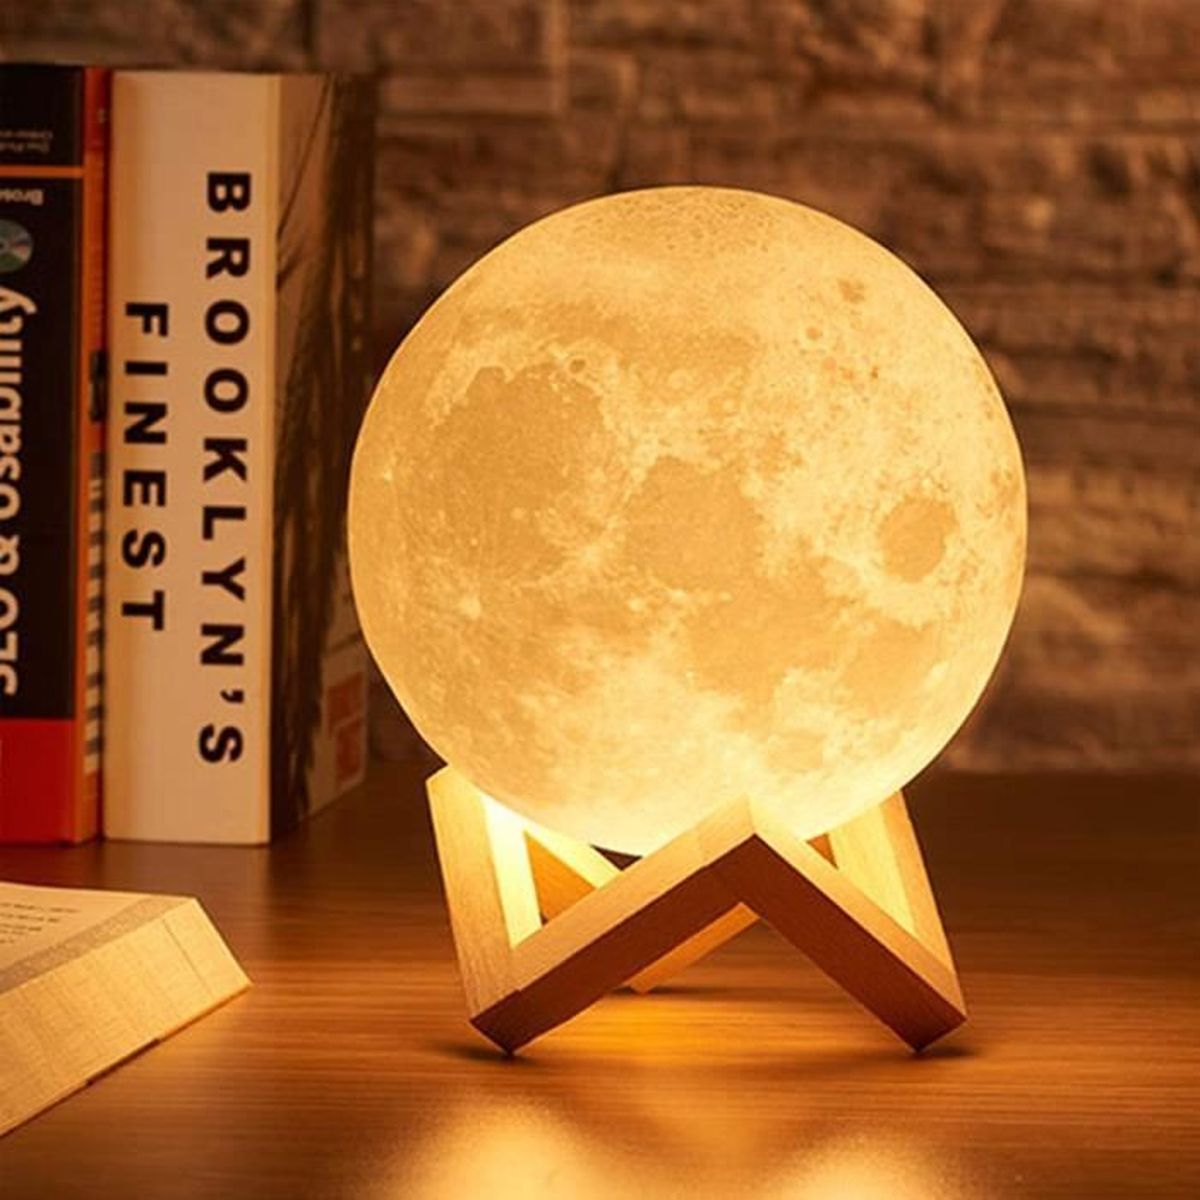 Lampe de nuit romantique 16 couleurs lampe de lune personnalisée avec votre propre image et texte cadeau d'anniversaire cadeau de fête des mères avec support et commande tactile 15CM